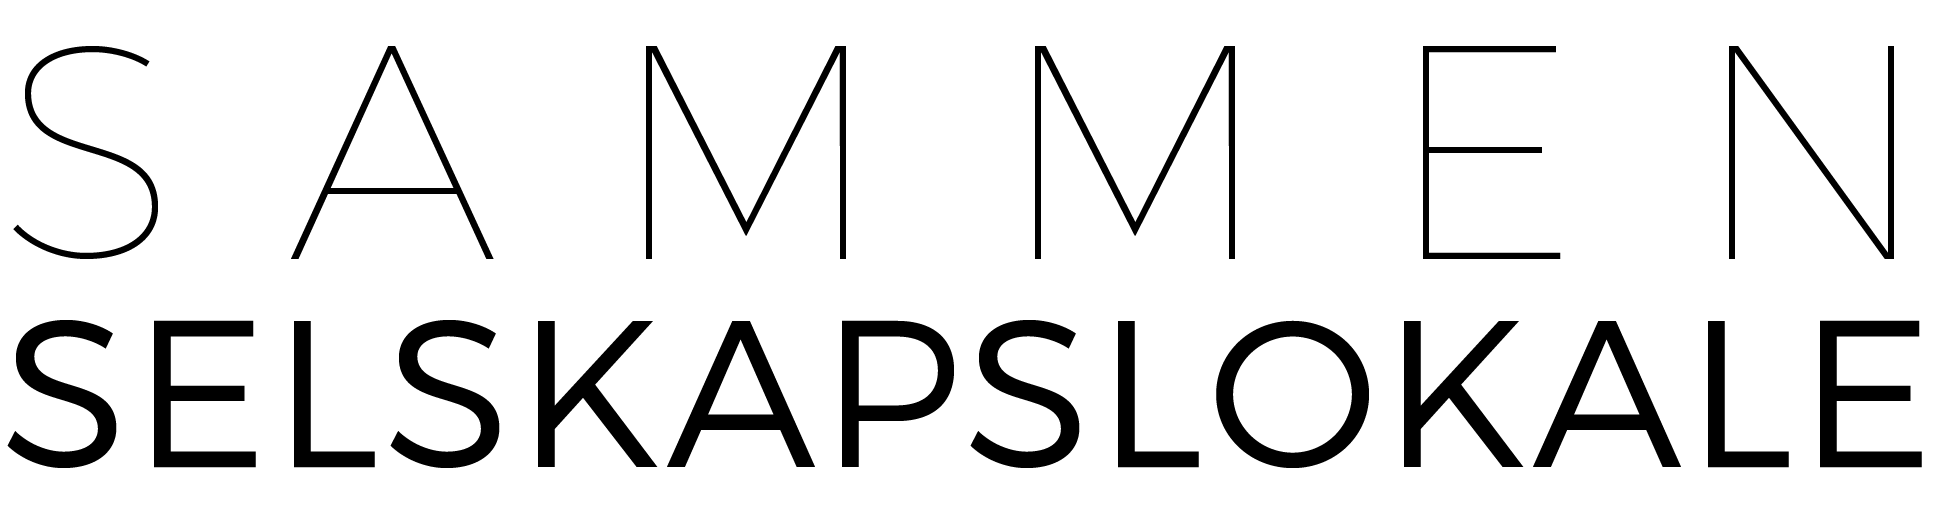 Sammen selskapslokale logo.png